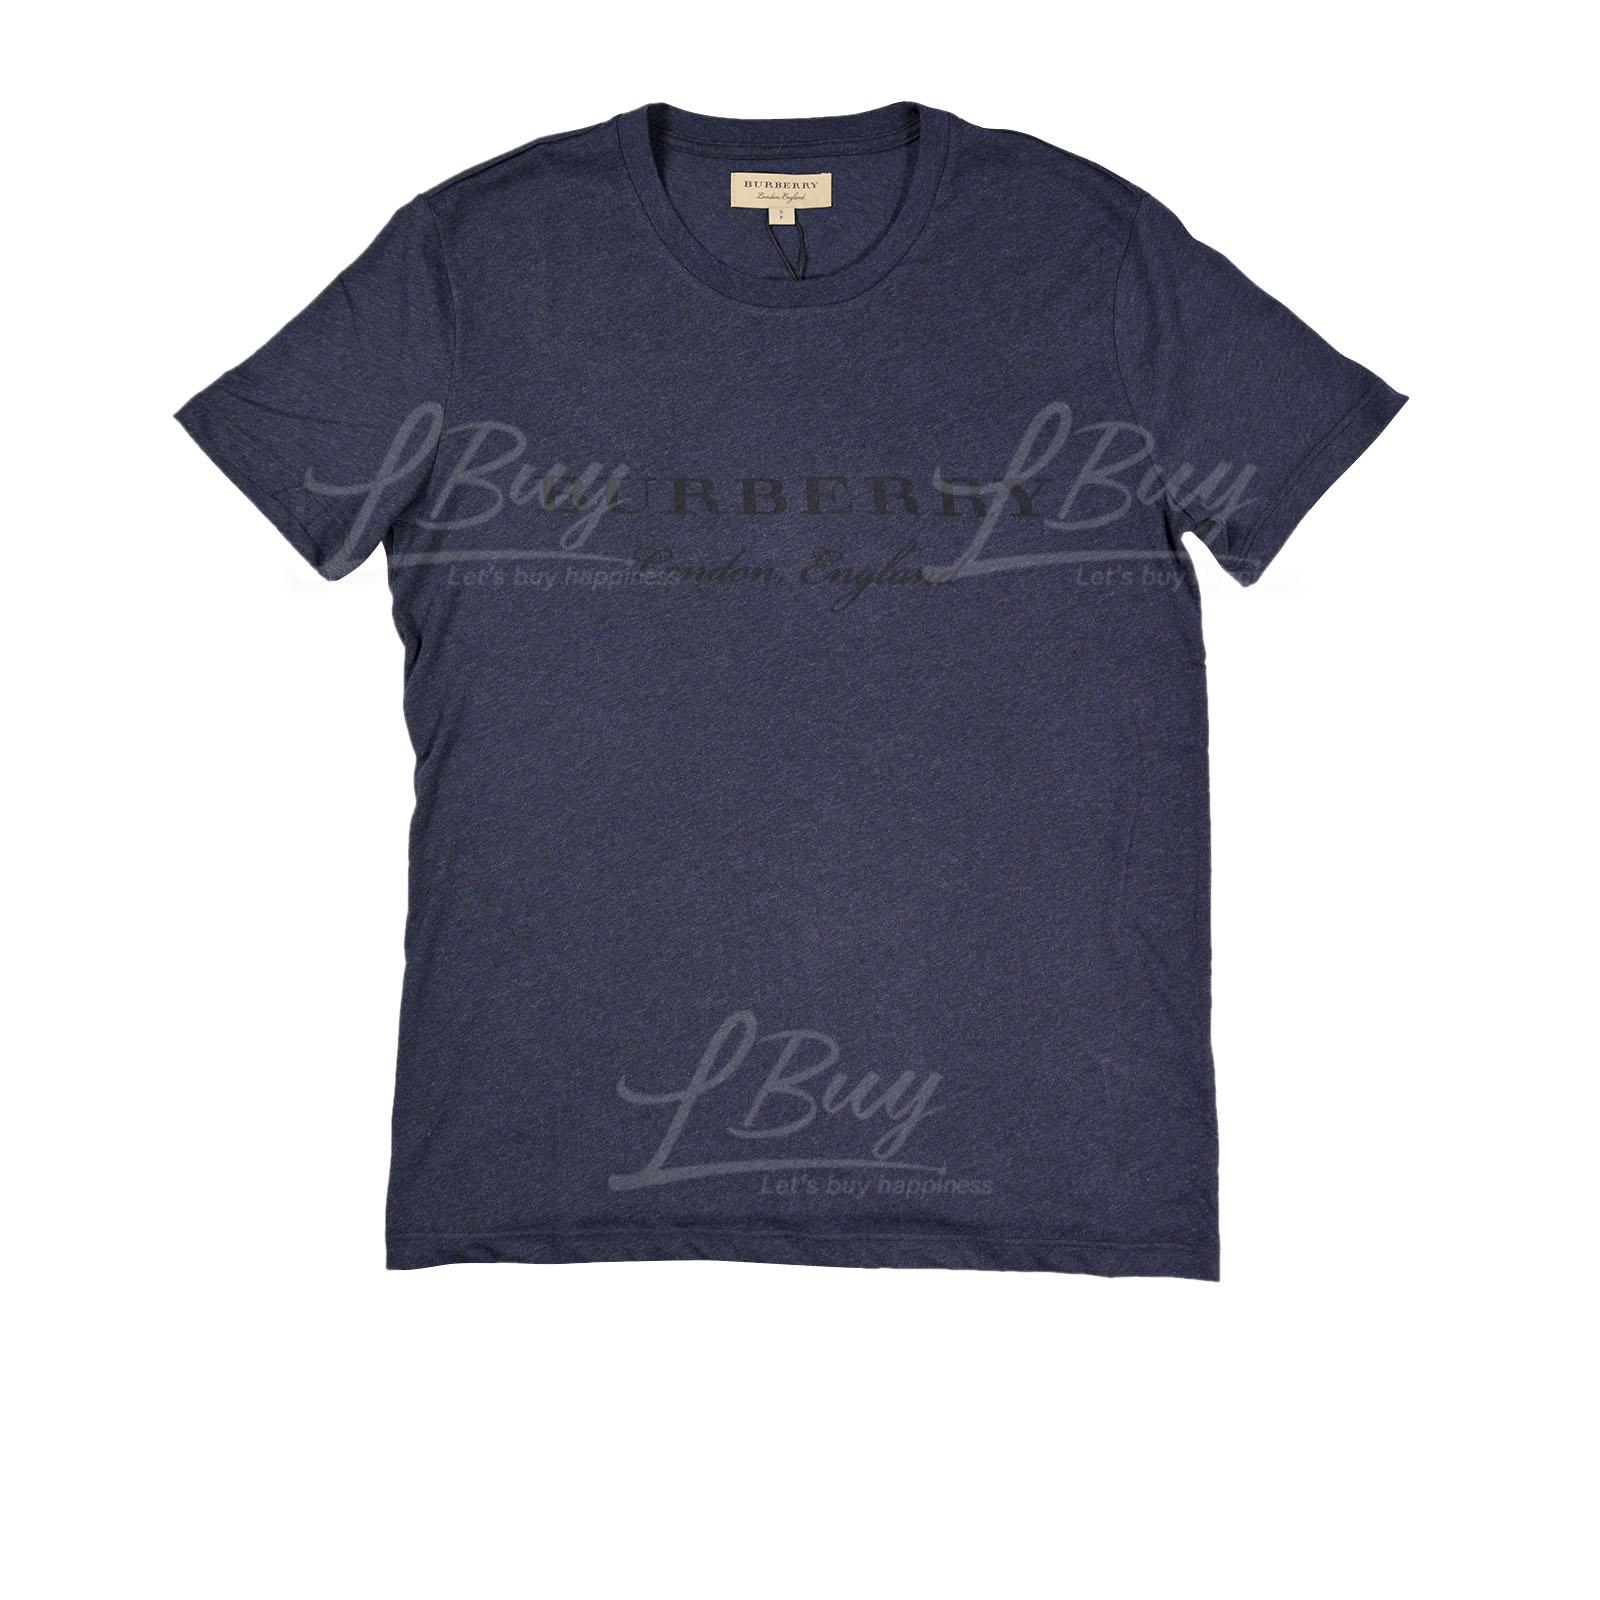 Burberry 黑色Logo短袖T恤 深蓝色